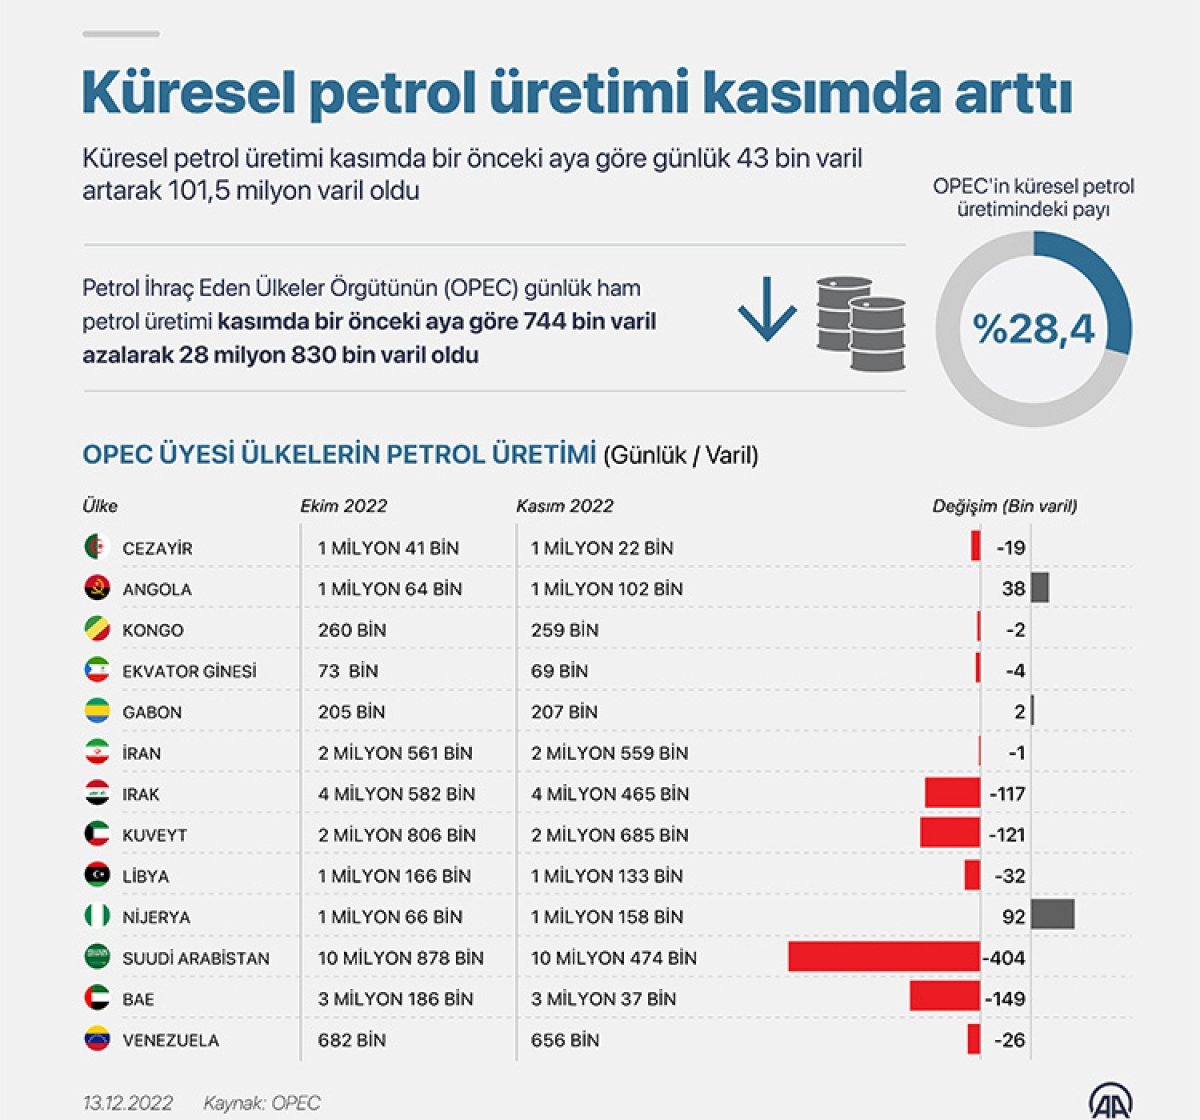 OPEC: Küresel petrol üretimi kasımda arttı #1